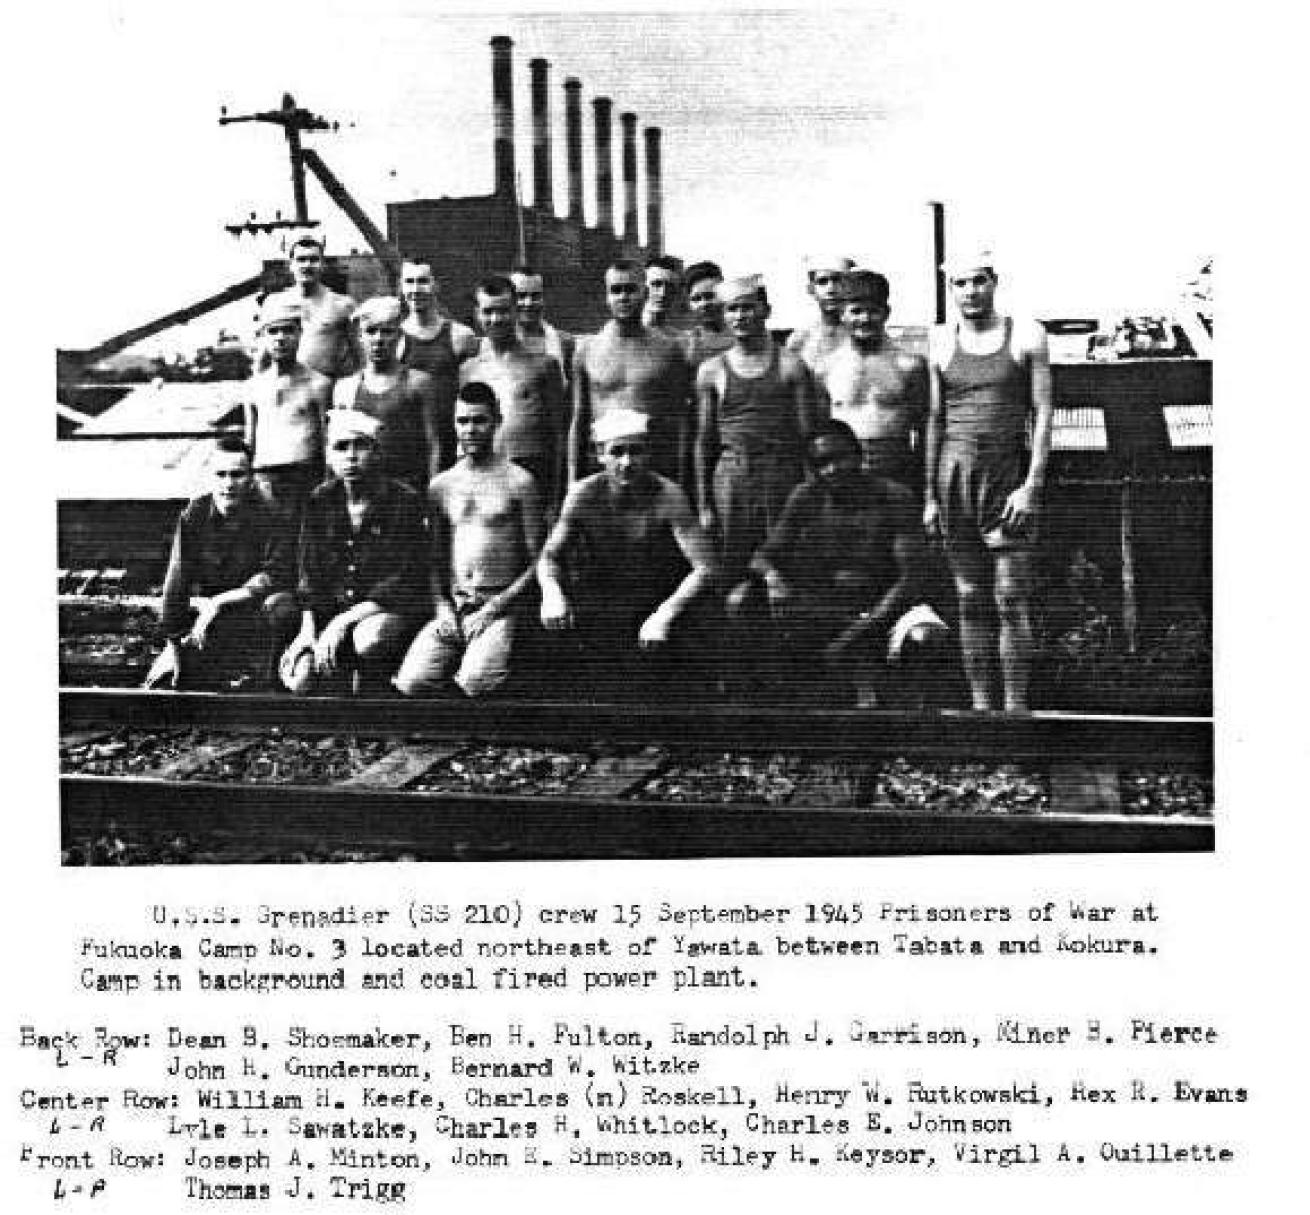 Crew members of the Grenadier.